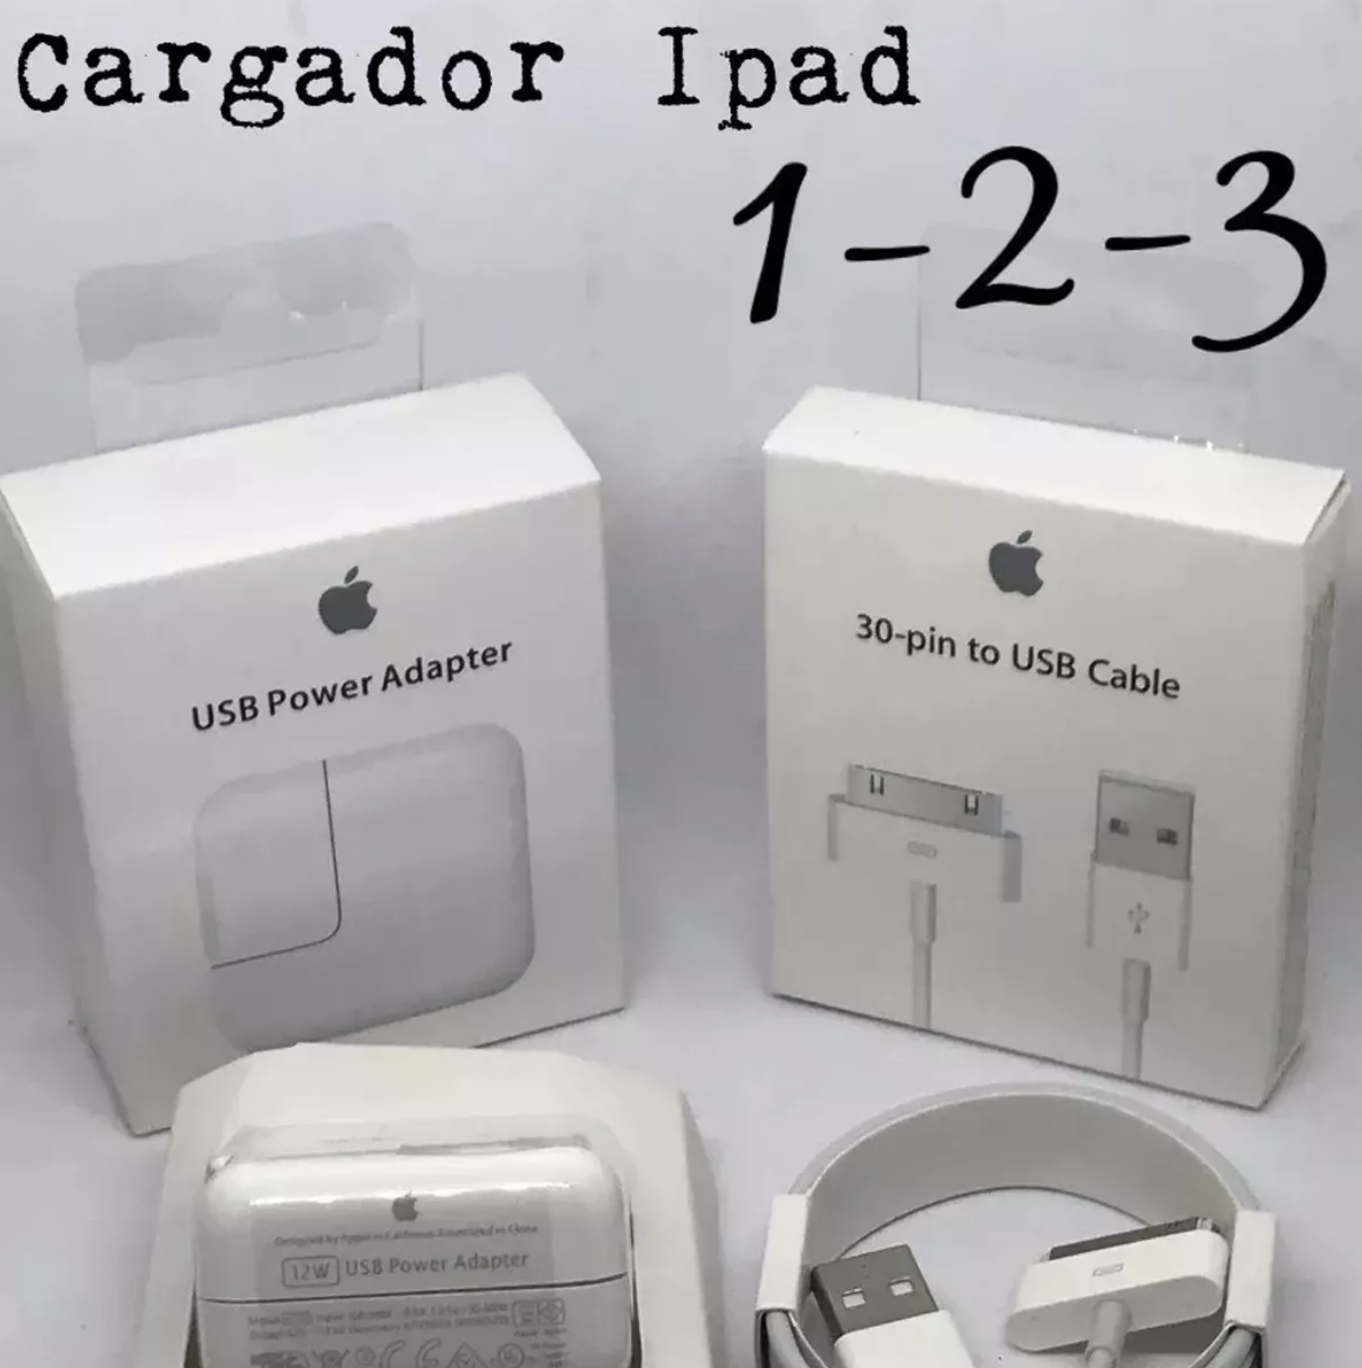 Cargador iPad 1 2 3 Original Apple / 12 Wts + Cable Usb 30 Pines